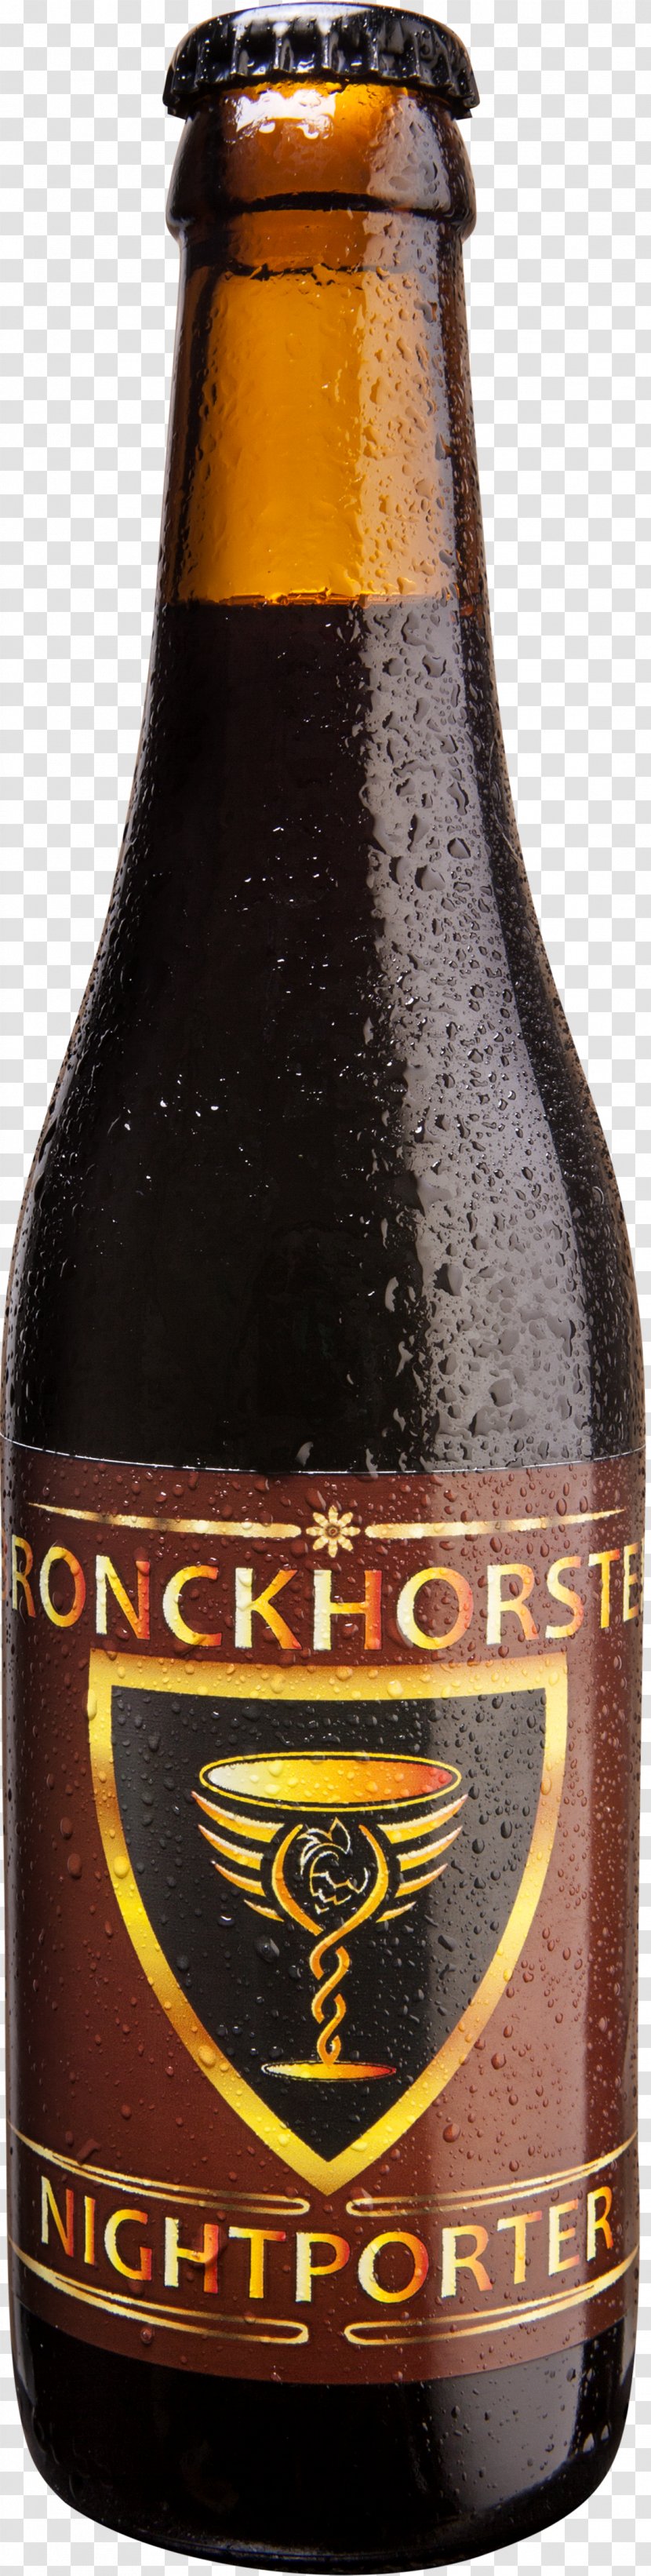 Ale Beer Bottle Jopen Bronckhorster Brewing Company - Alcoholic Beverage Transparent PNG